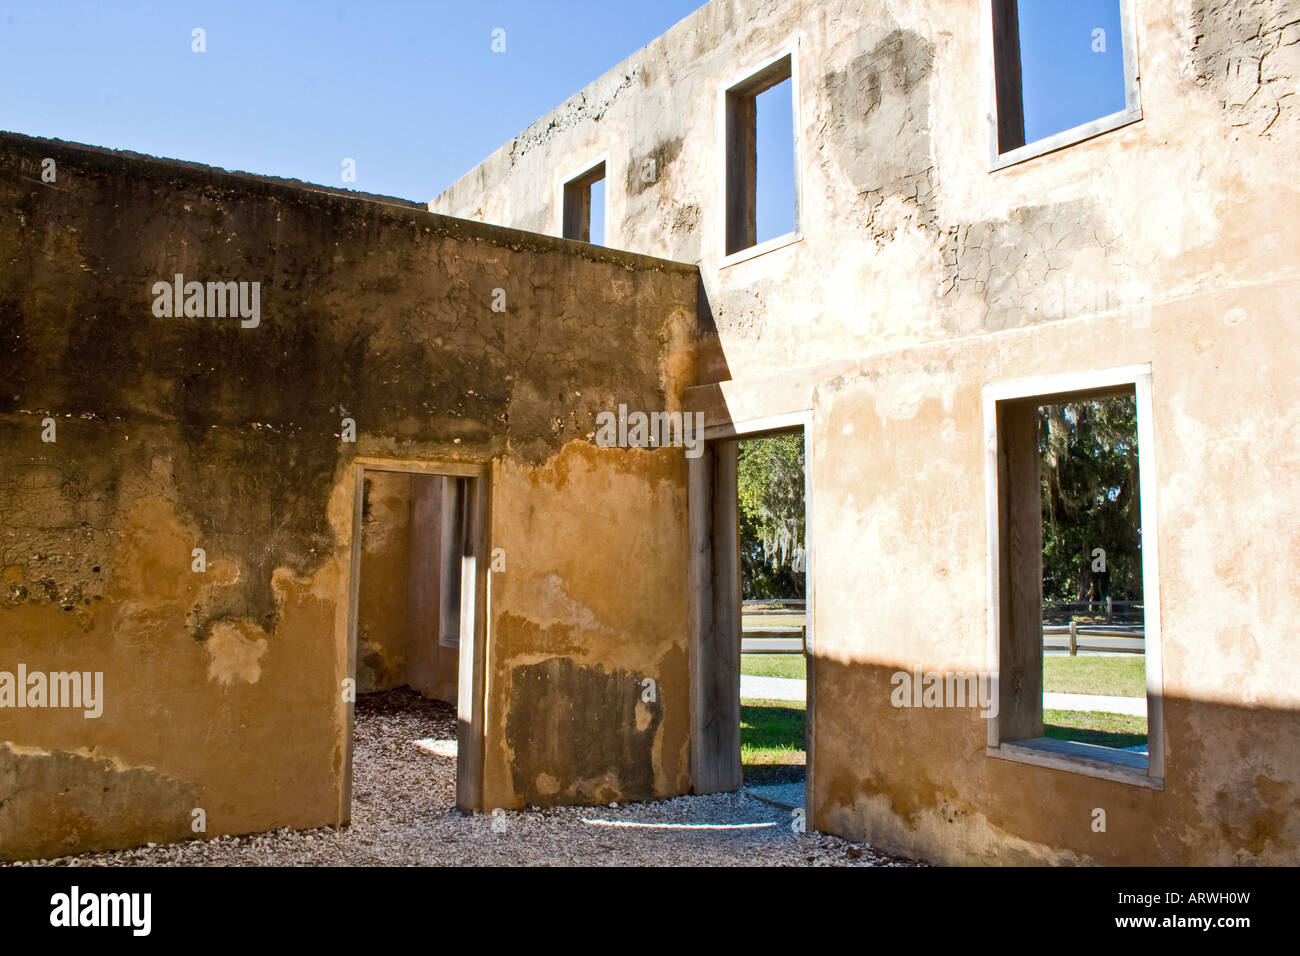 Alten verfallenden Gebäudehülle ohne Dach, Türen oder Fenster. Stockfoto